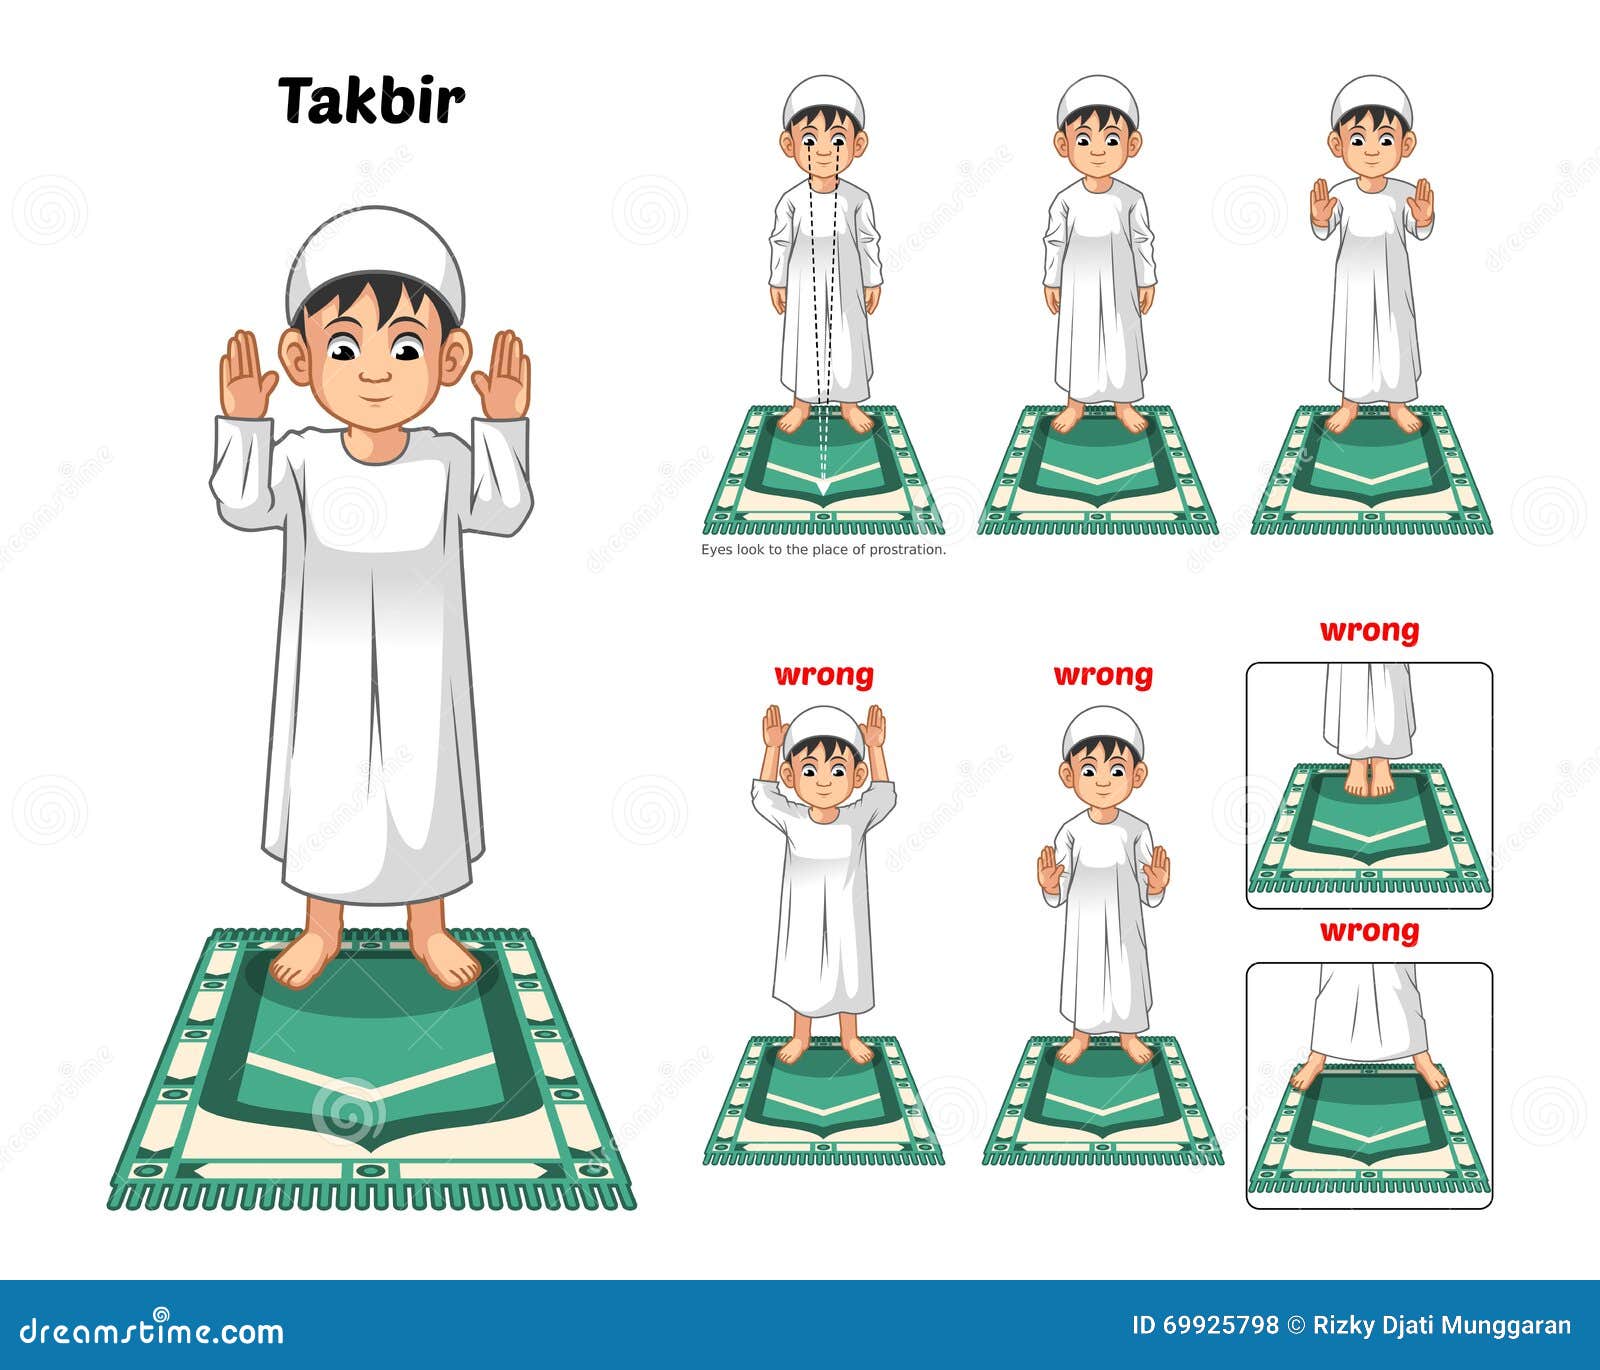 Начать молиться мусульманину. Схема намаза. Движения в намазе в картинках. Как делать намаз детям. Намаз по картинкам.